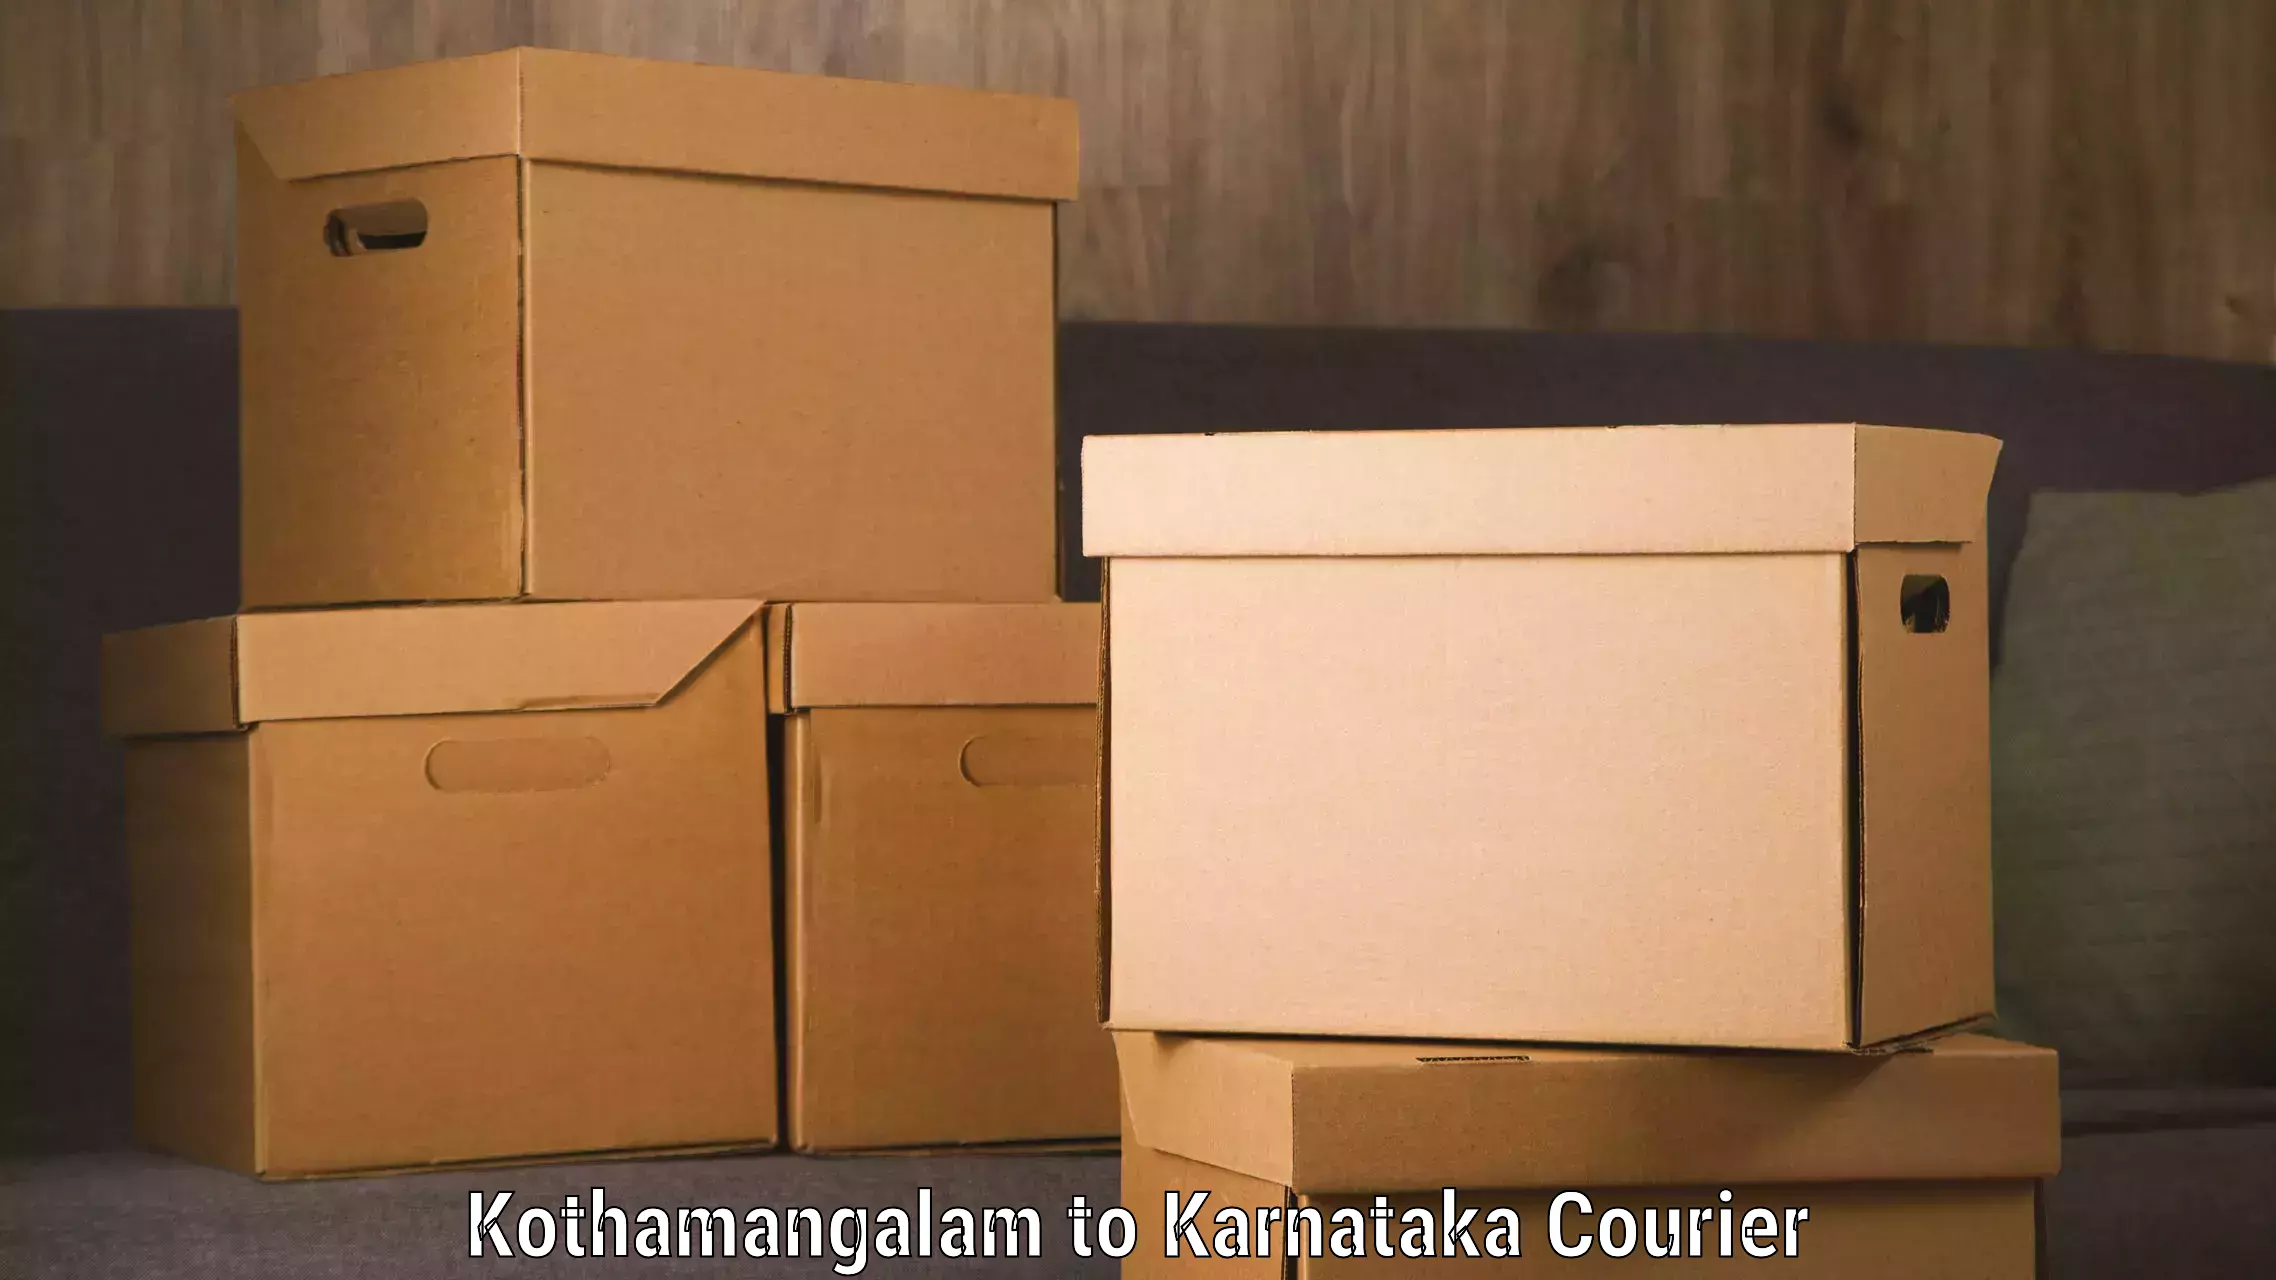 Express delivery network Kothamangalam to Yenepoya Mangalore